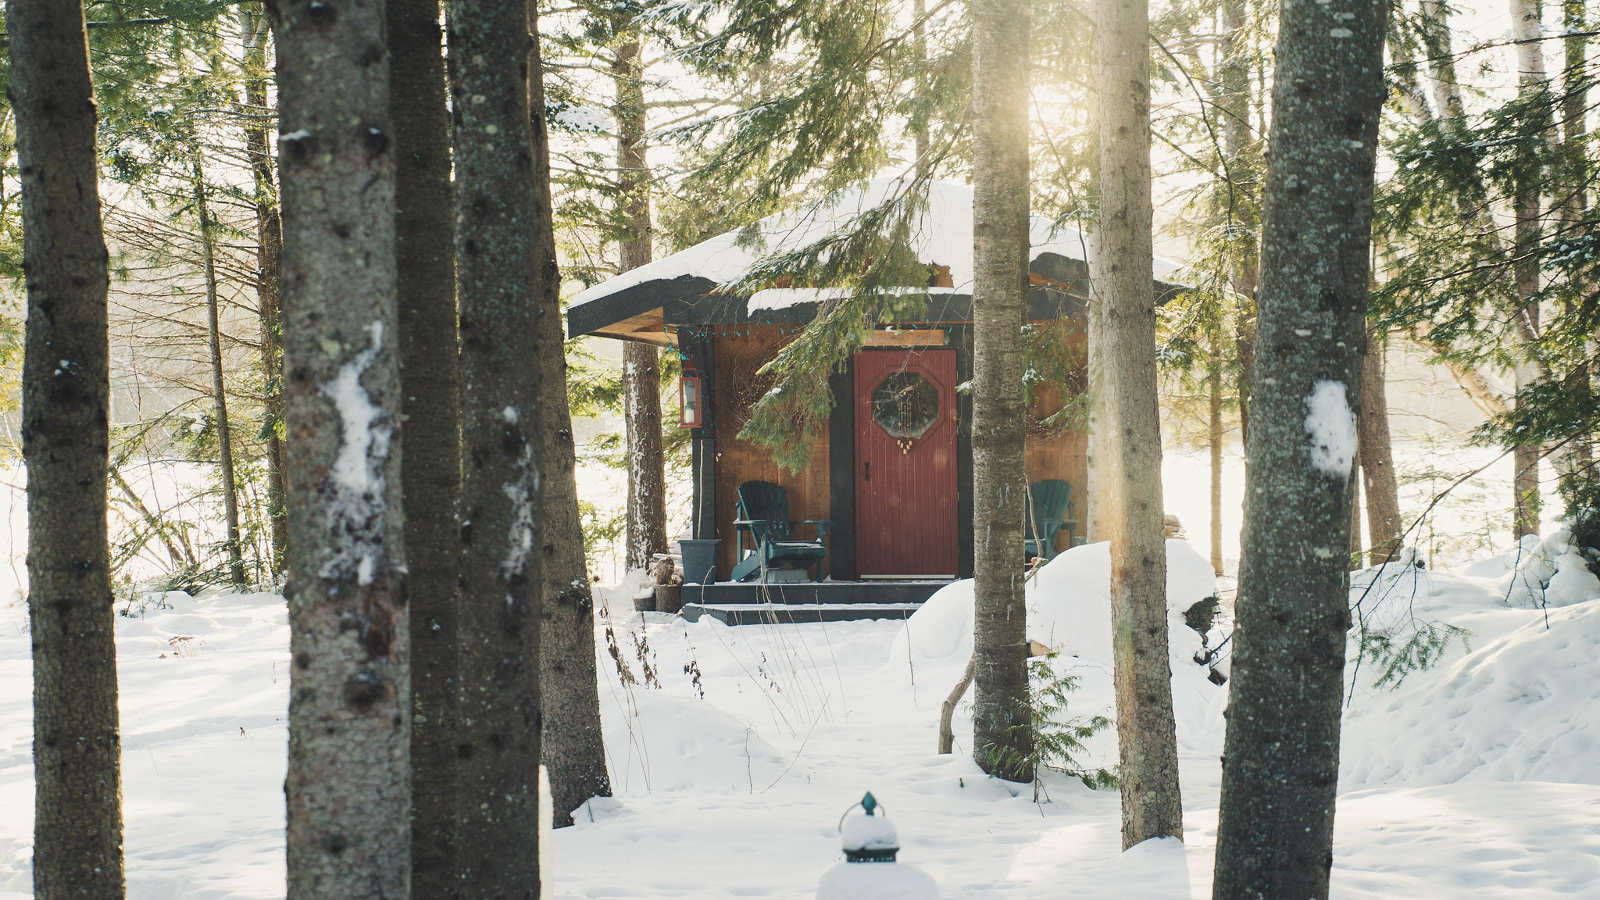 cedar-sauna-experience-in-winter